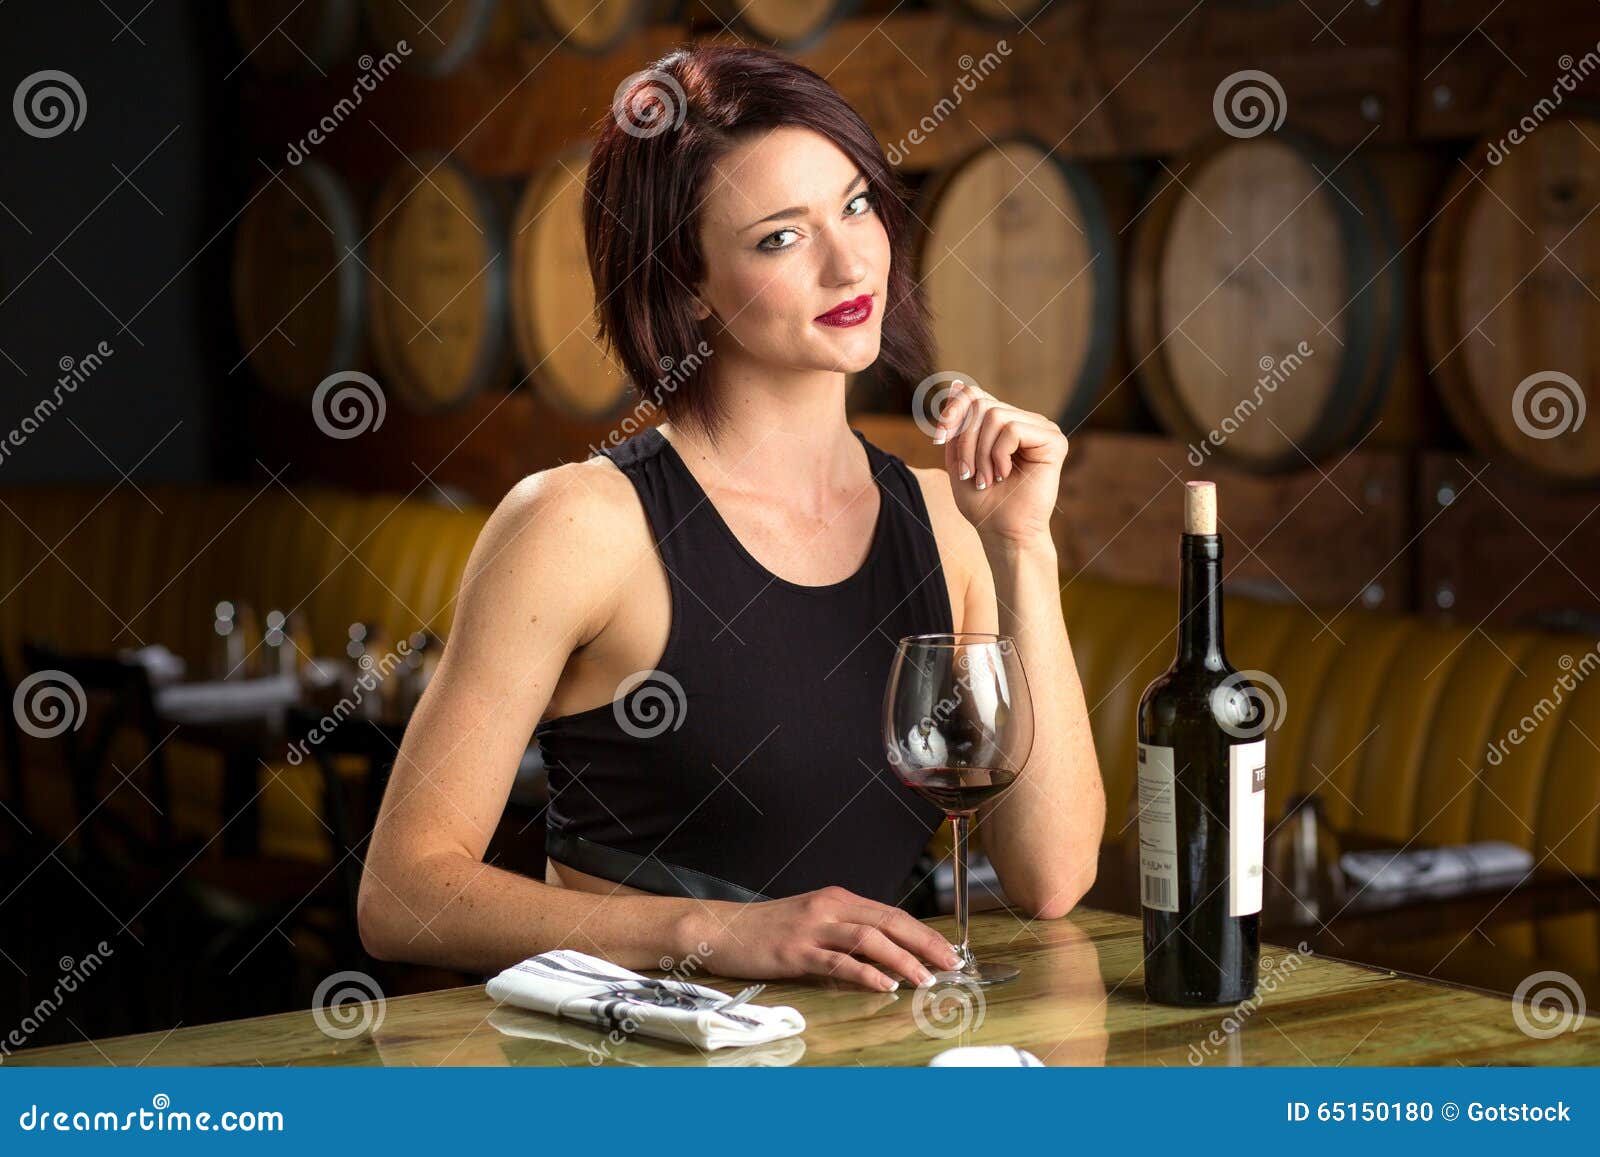 Pretty Woman In Wine